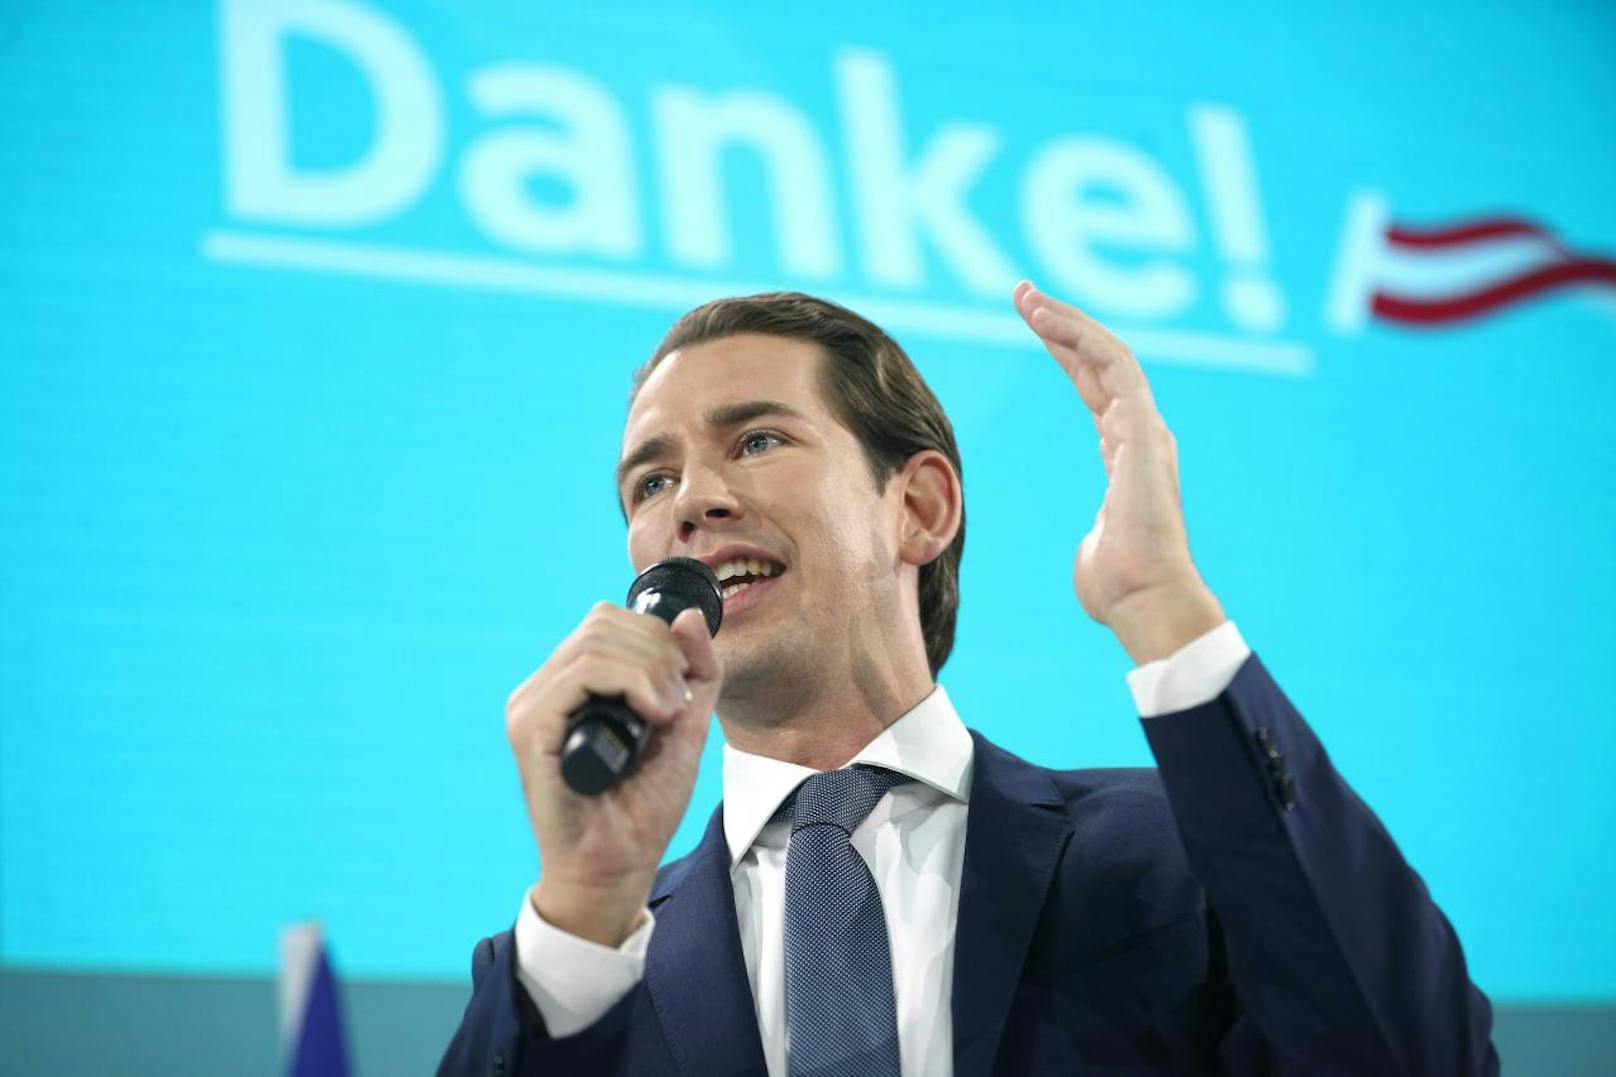 Sebastian Kurz am Abend: Es steht fest, was Interessierten schon länger klar war: Die ÖVP ist erneut stimmenstärkste Partei im österreichischen Nationalrat.